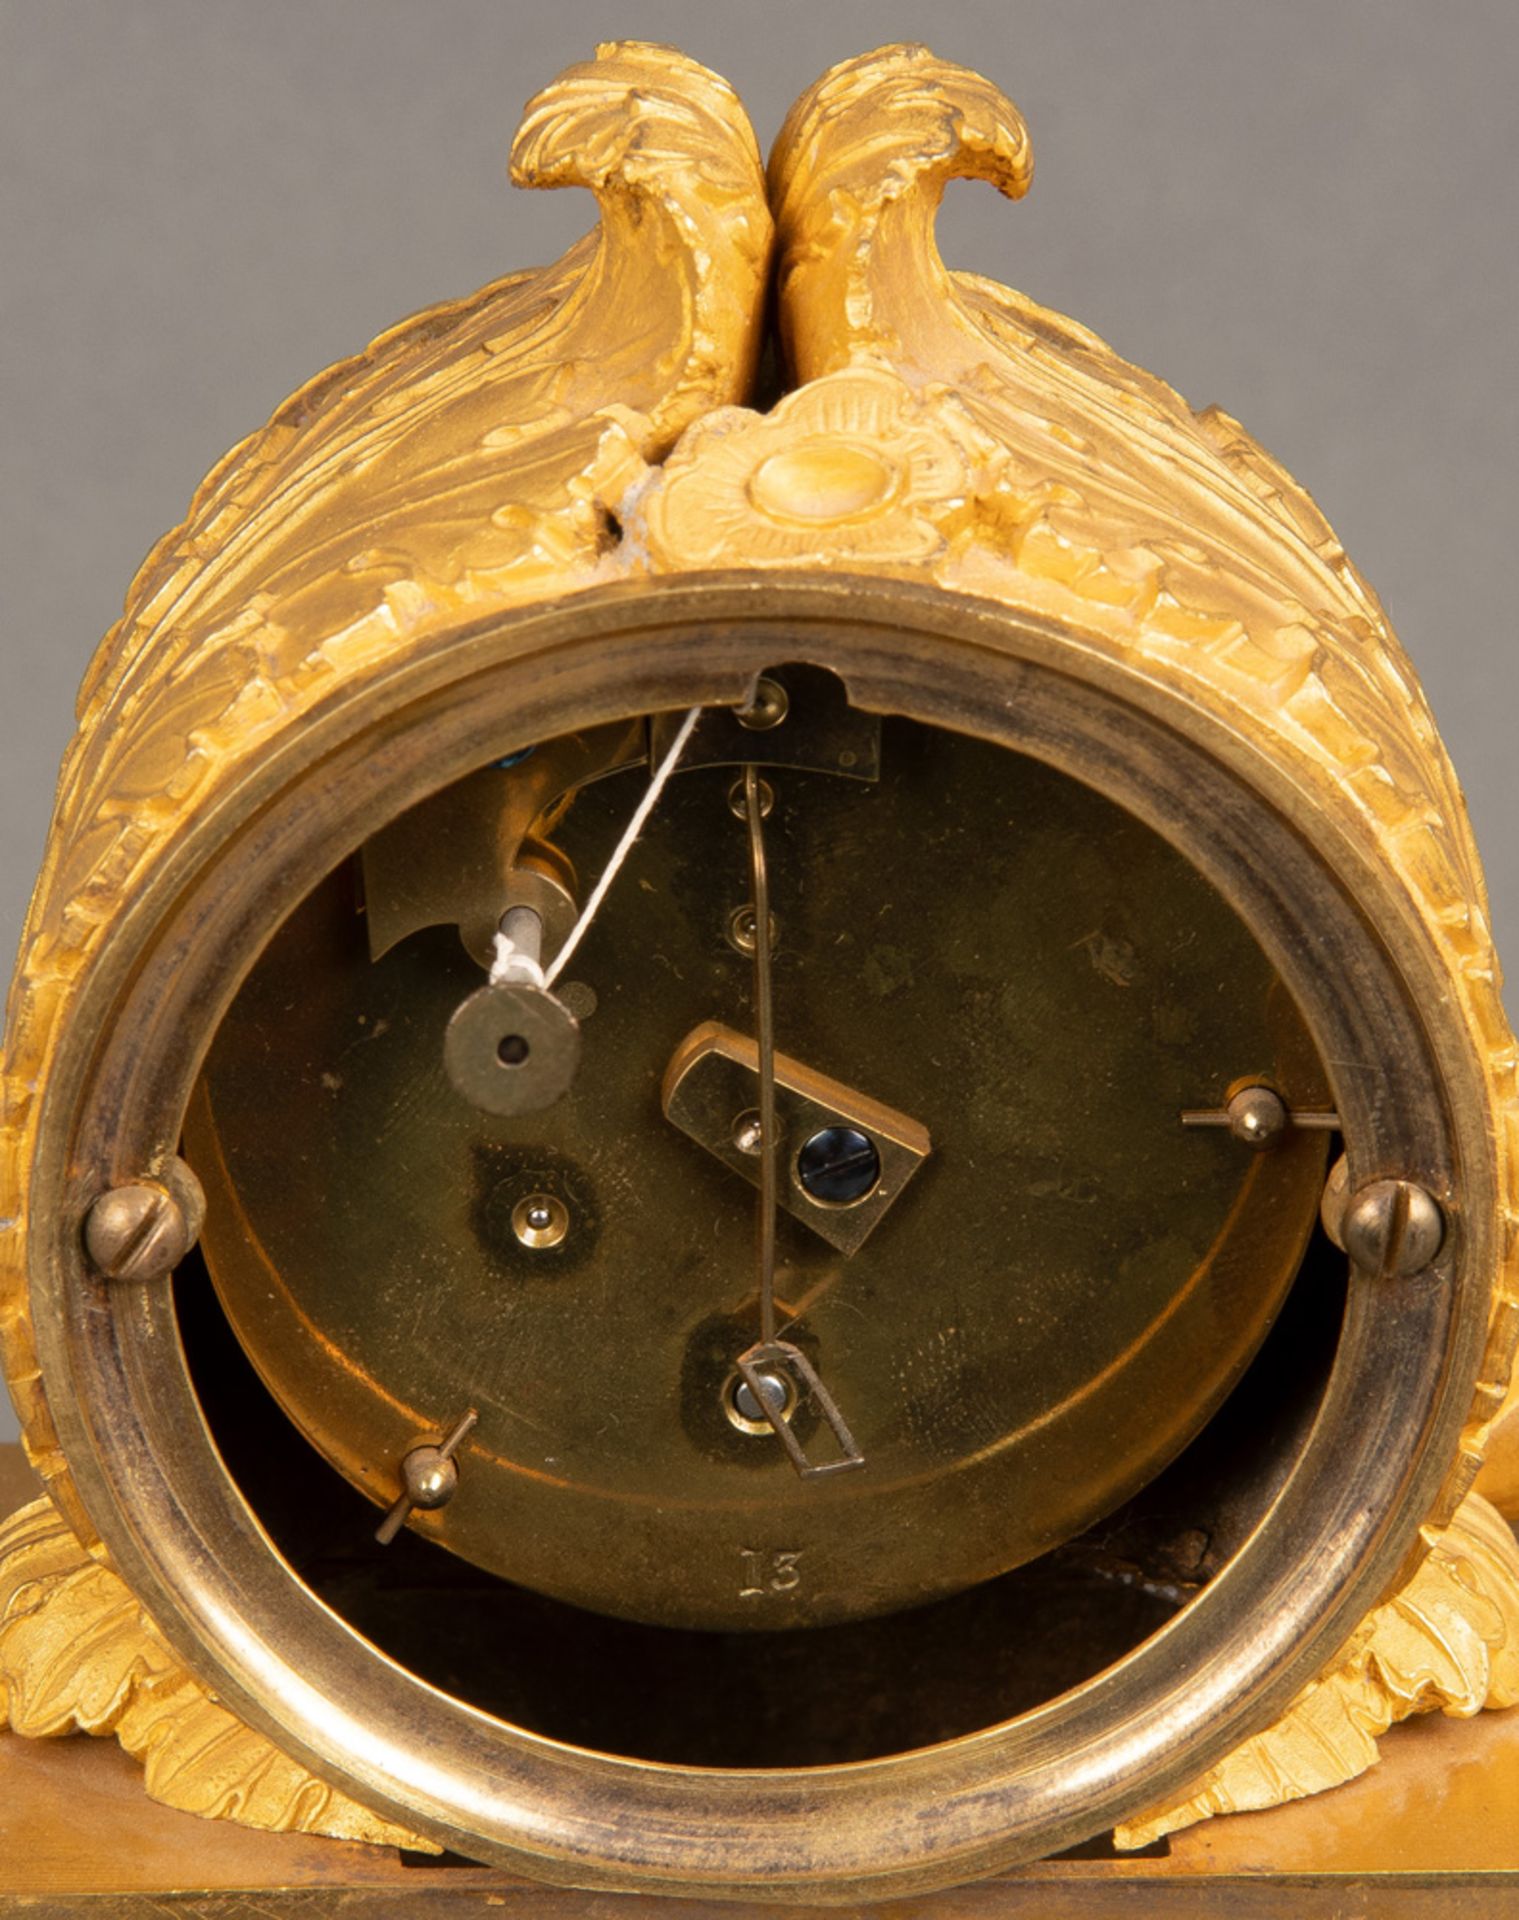 Empire-Tischuhr. Paris 19. Jh. Bronze, feuervergoldet. Rundes Uhrwerk mit einfachem Schlüsselaufzug, - Image 2 of 2